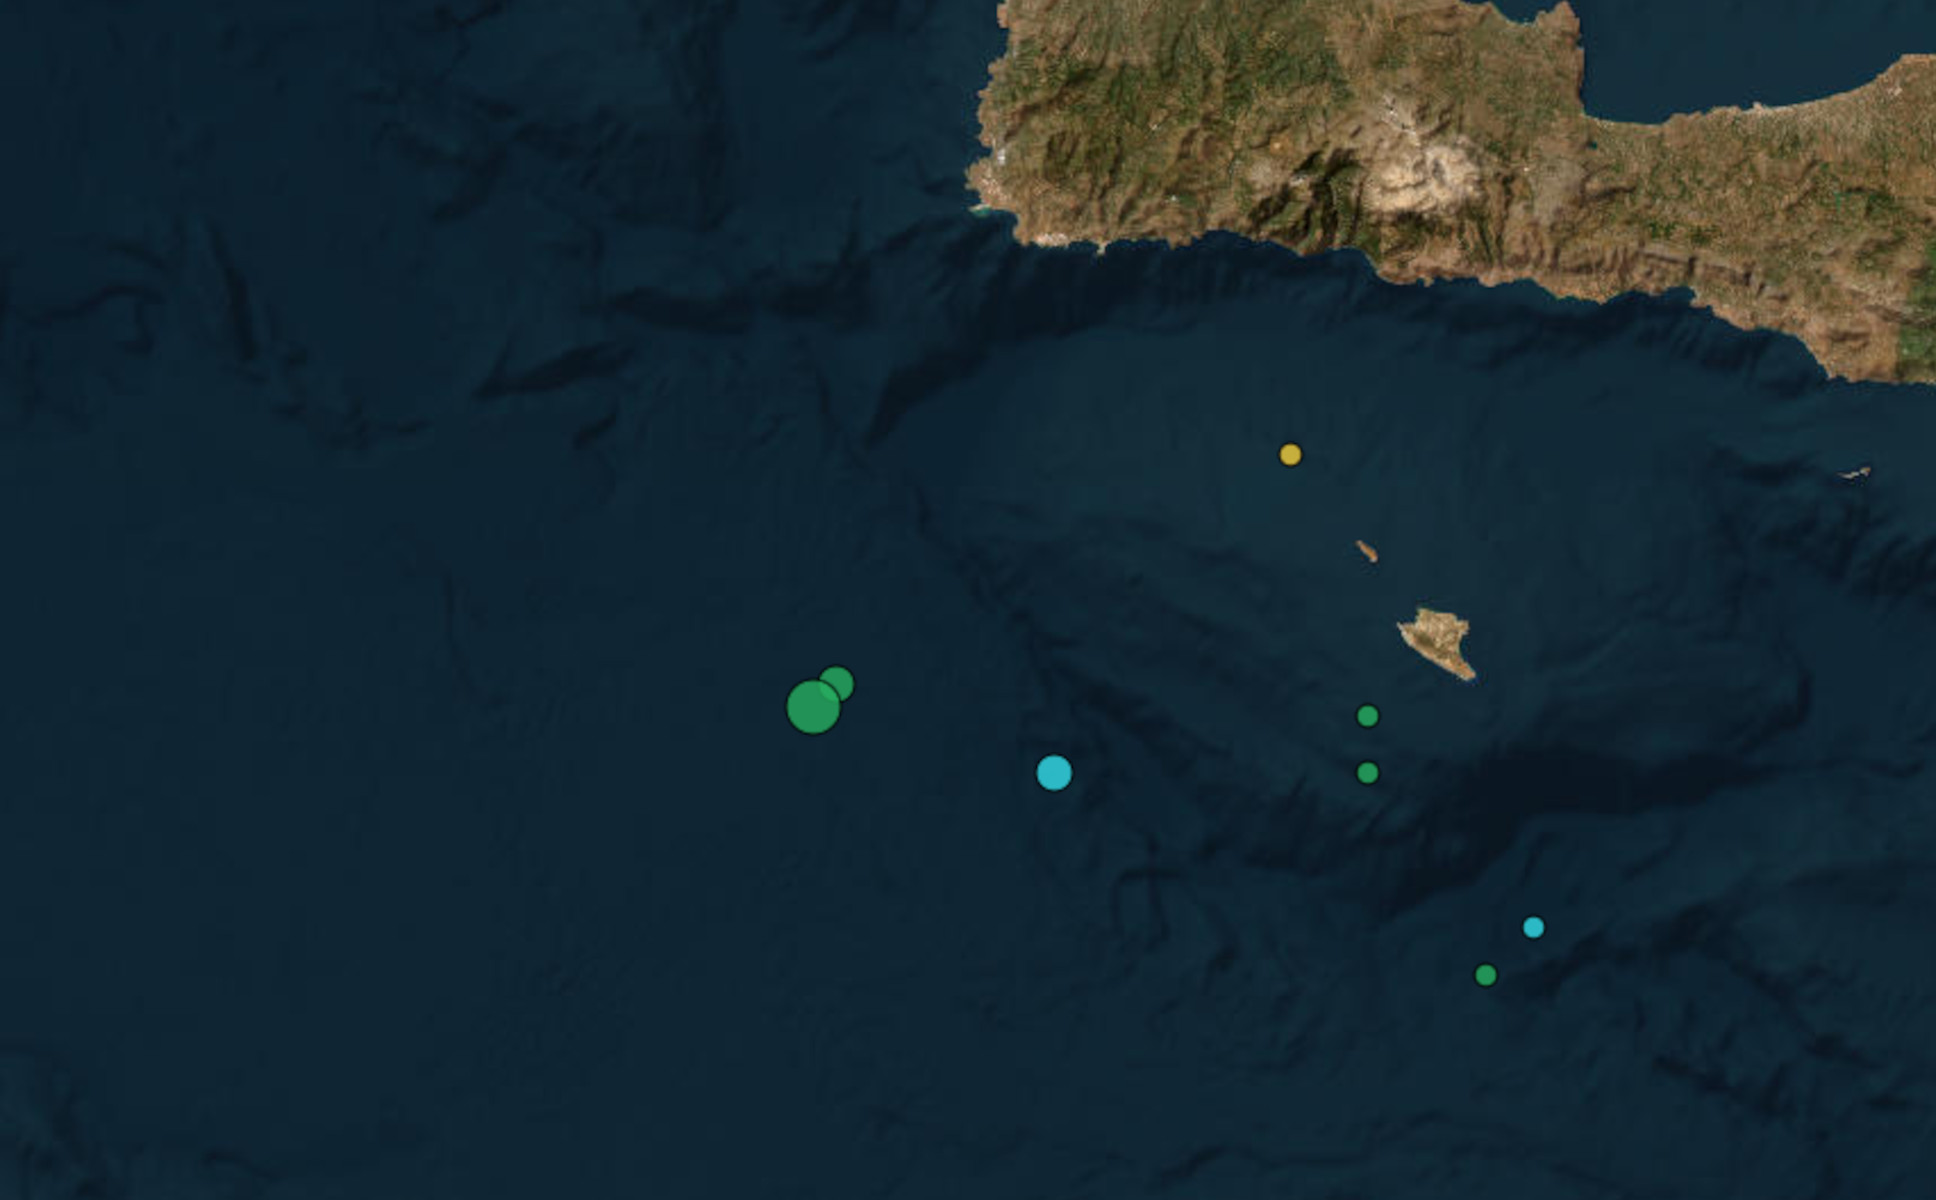 Σεισμός 4 Ρίχτερ στην Κρήτη τα ξημερώματα